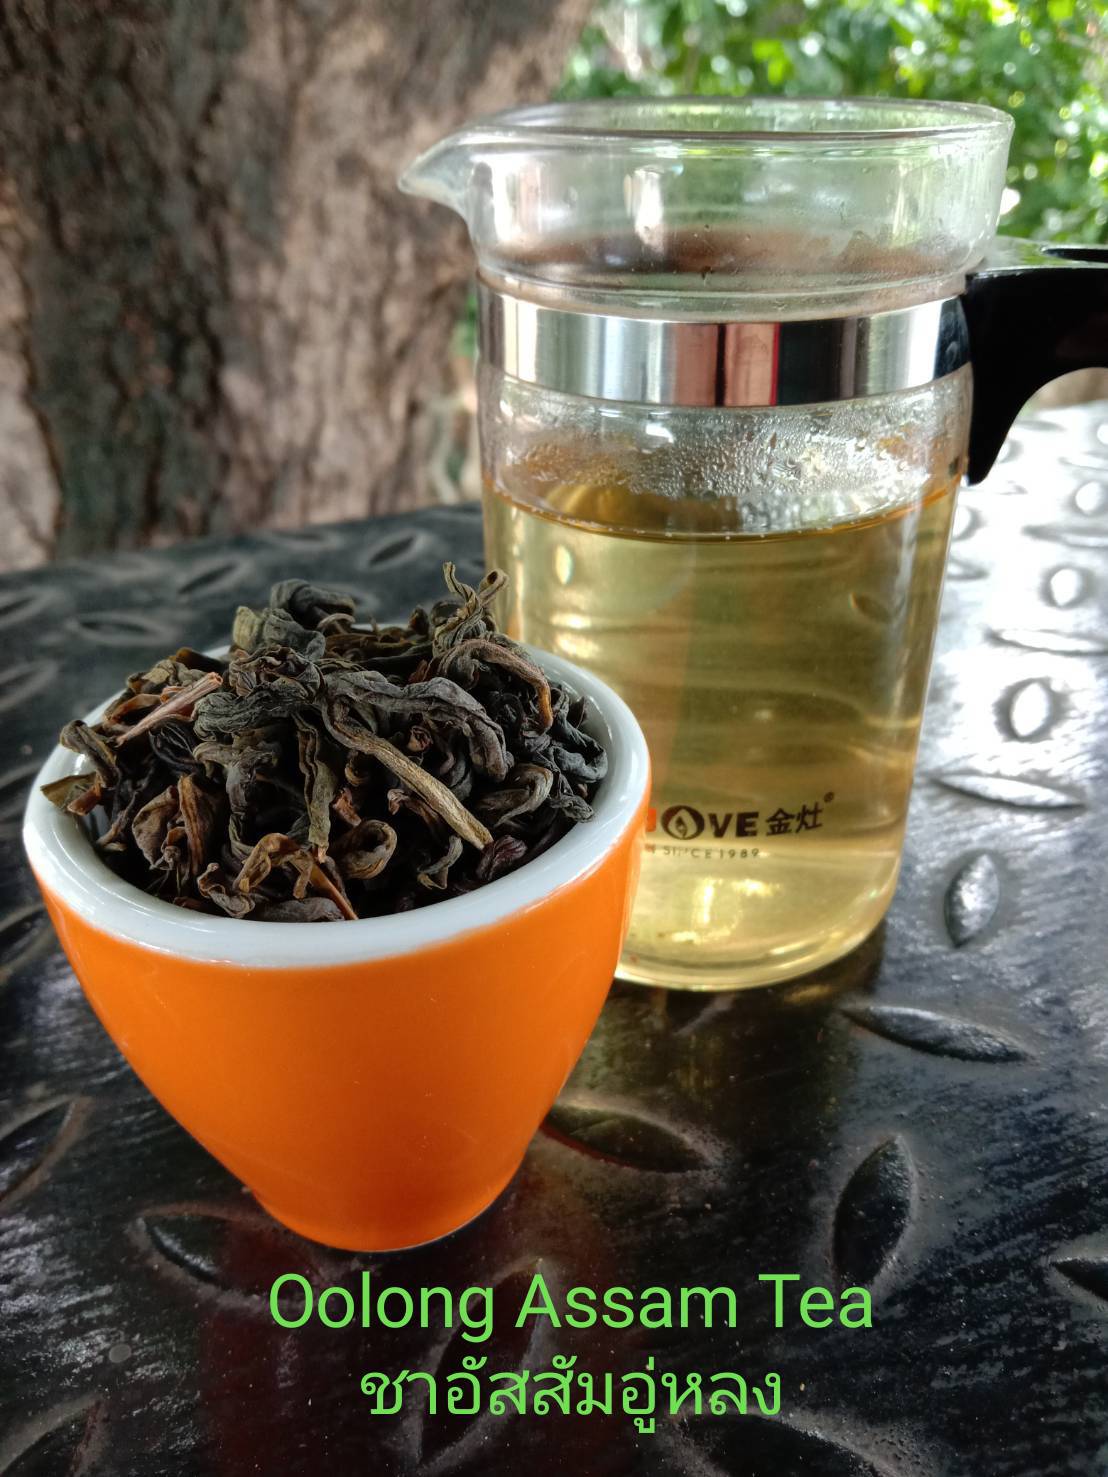 ชาอู่หลงอัสสัม ออร์แกนิค (ตราดอยปู่หมื่น) 1 กก. Organic Assam Oolong Tea (Doi Pumuen Brand) 1 kg.